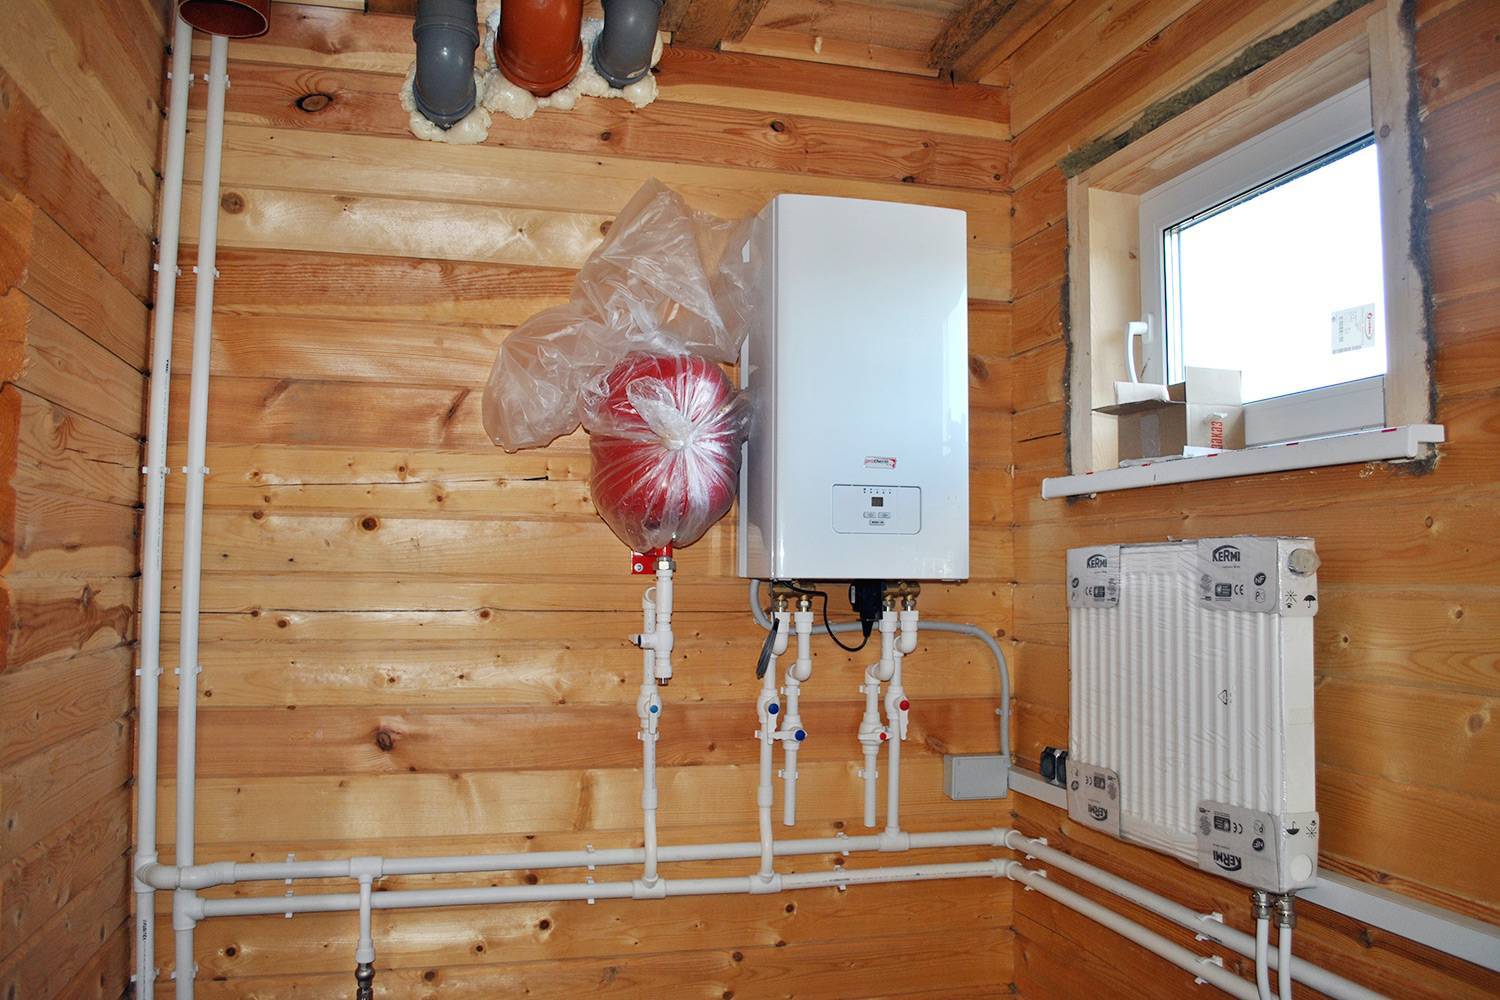 Отопление дома электричеством: самый экономный способ, как обогреть частные жилища дёшево с помощью электрического обогрева